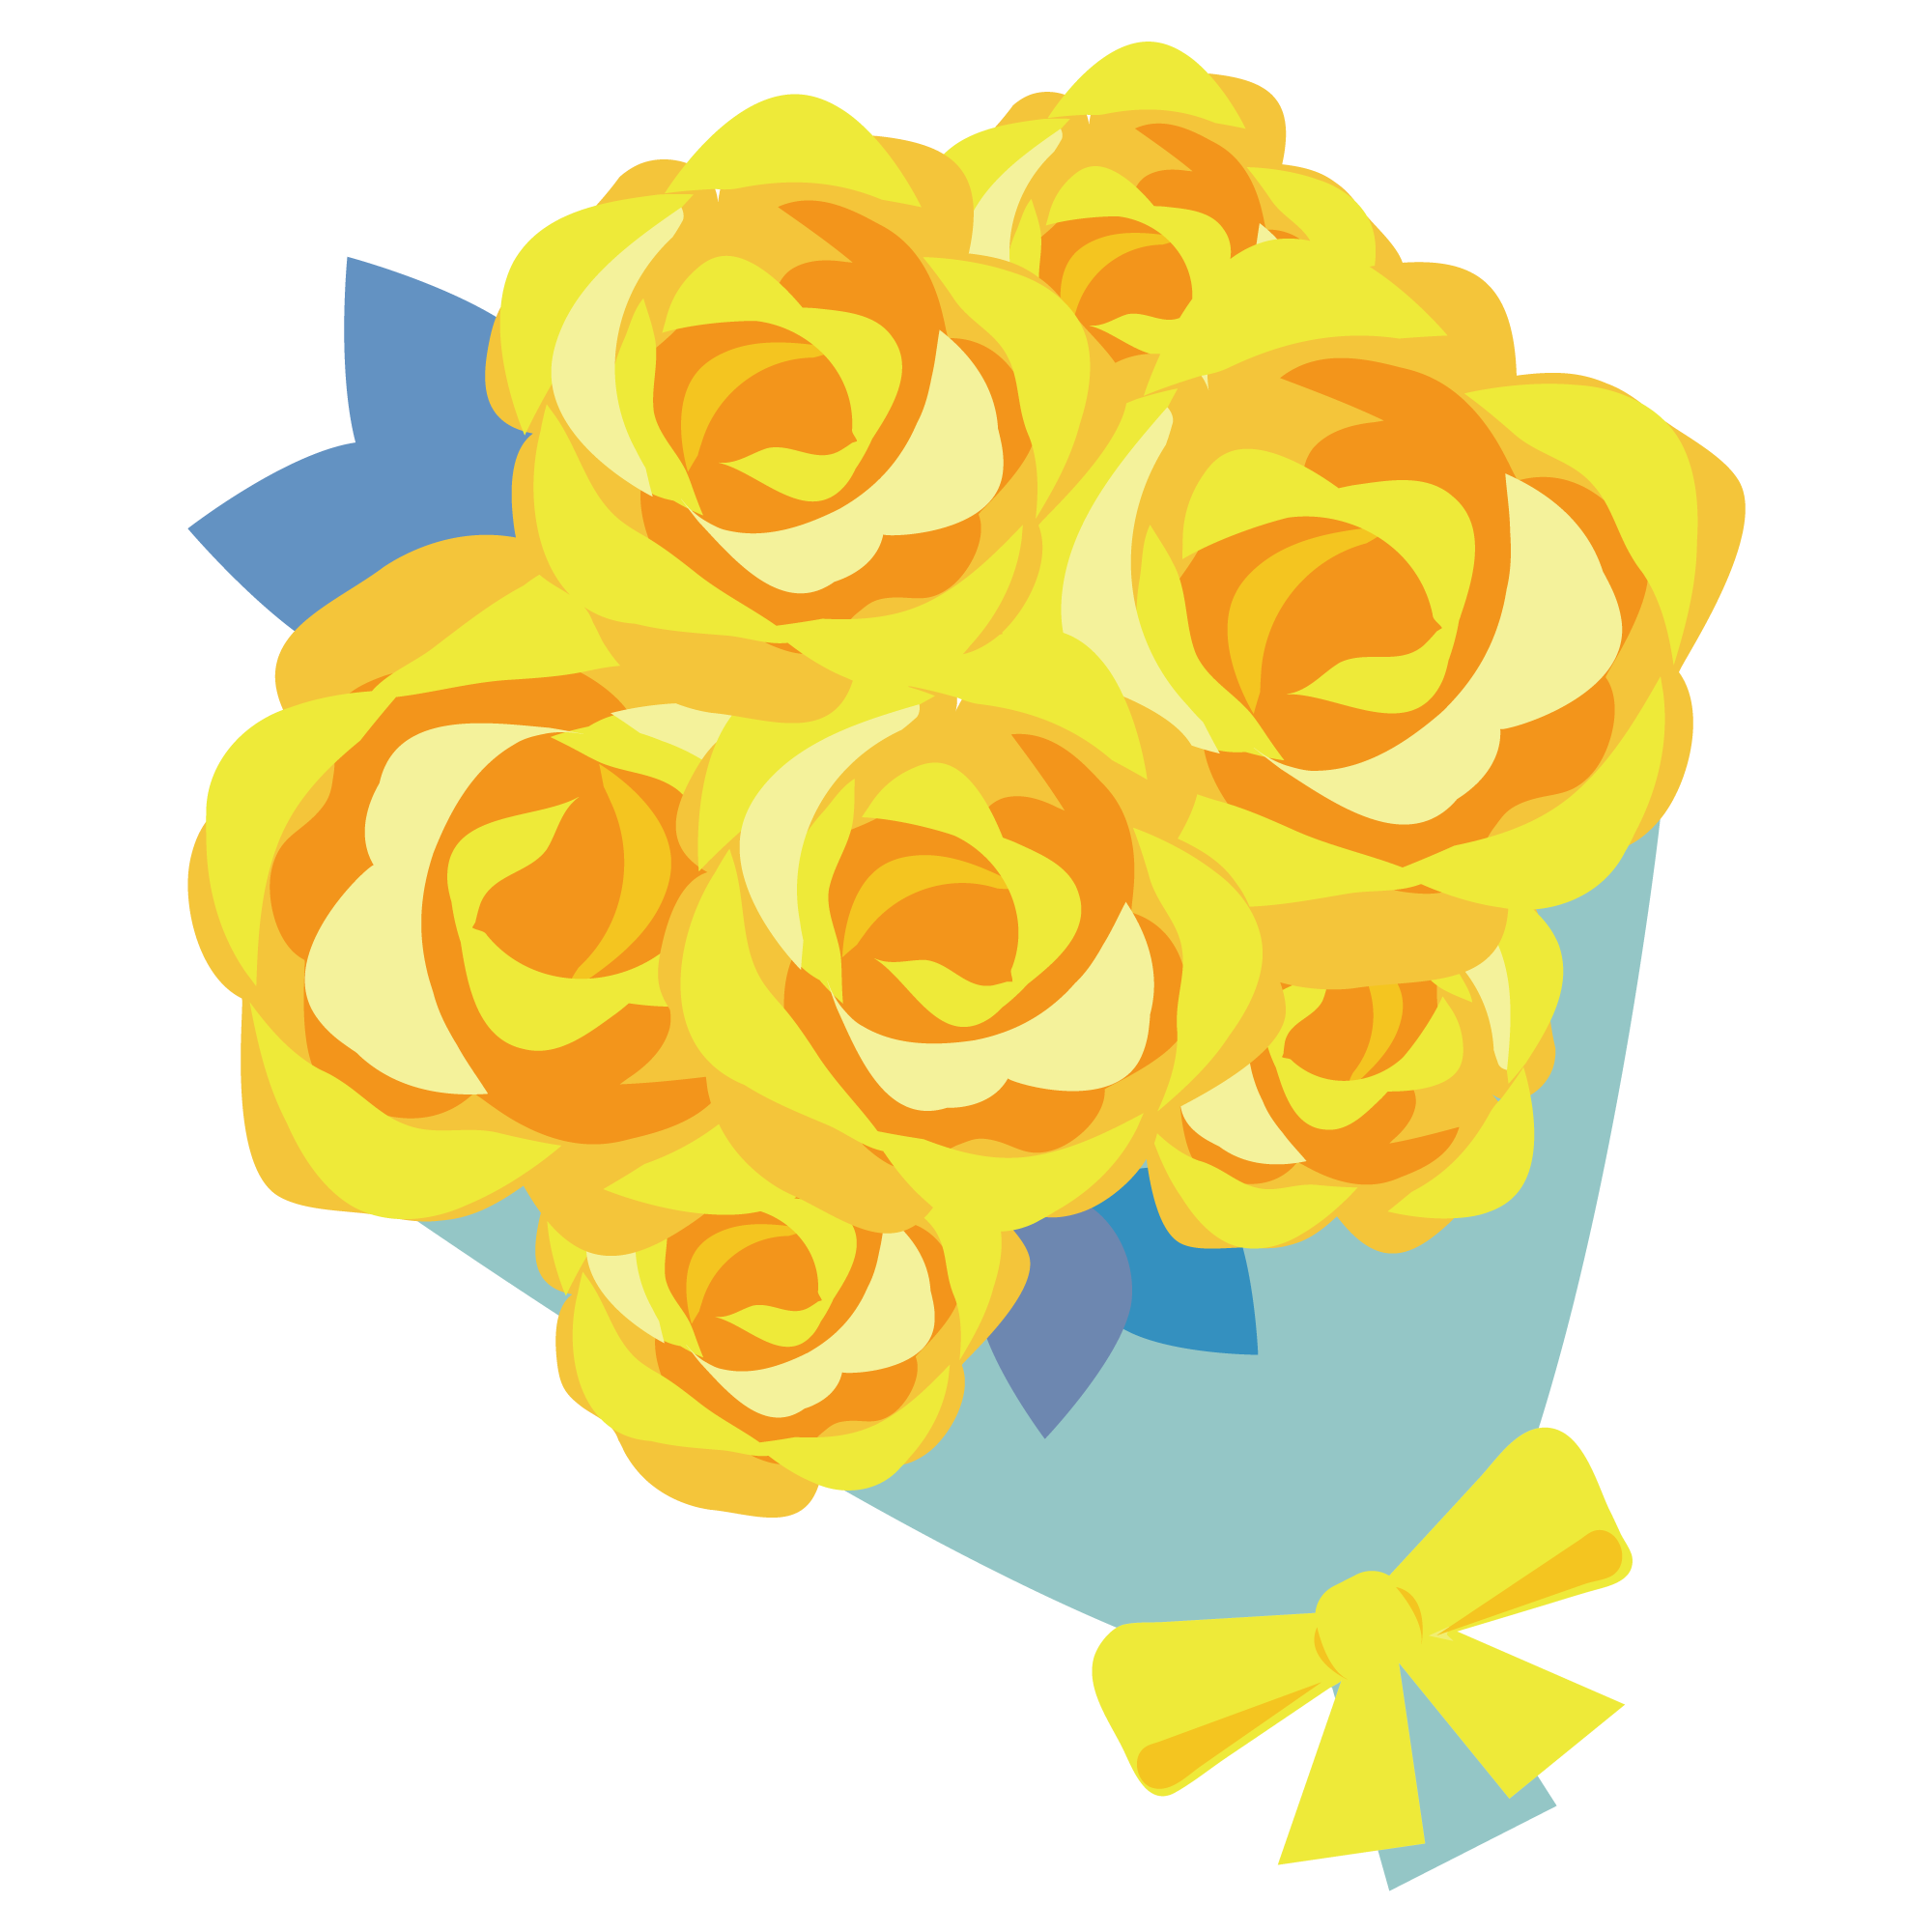 黄色いバラの花束のイラスト イラスト素材館